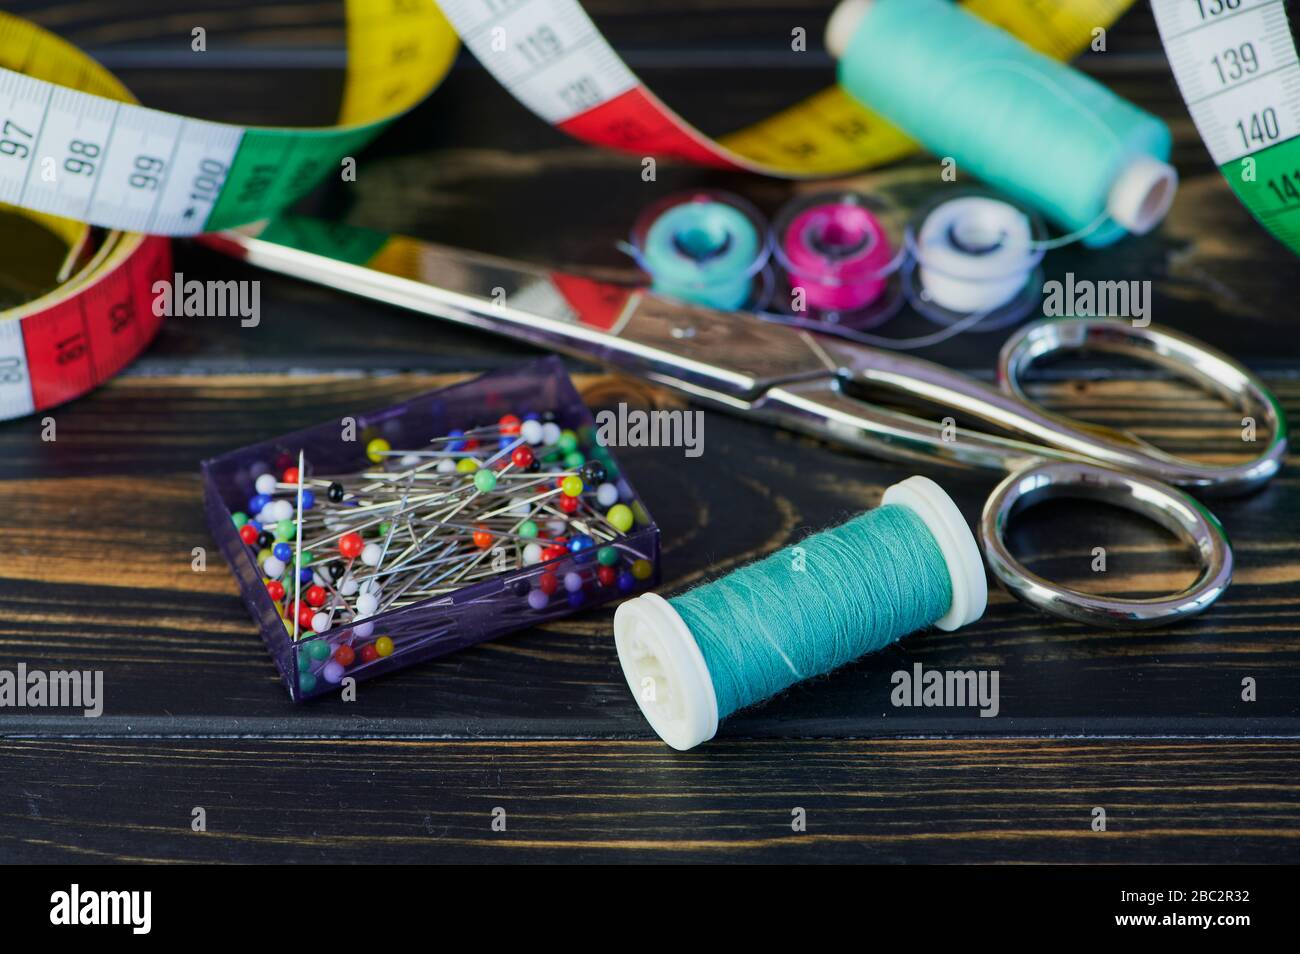 photo en couleur macro de différents outils de couture tels que des ciseaux et des fils à coudre sur une table en bois Banque D'Images